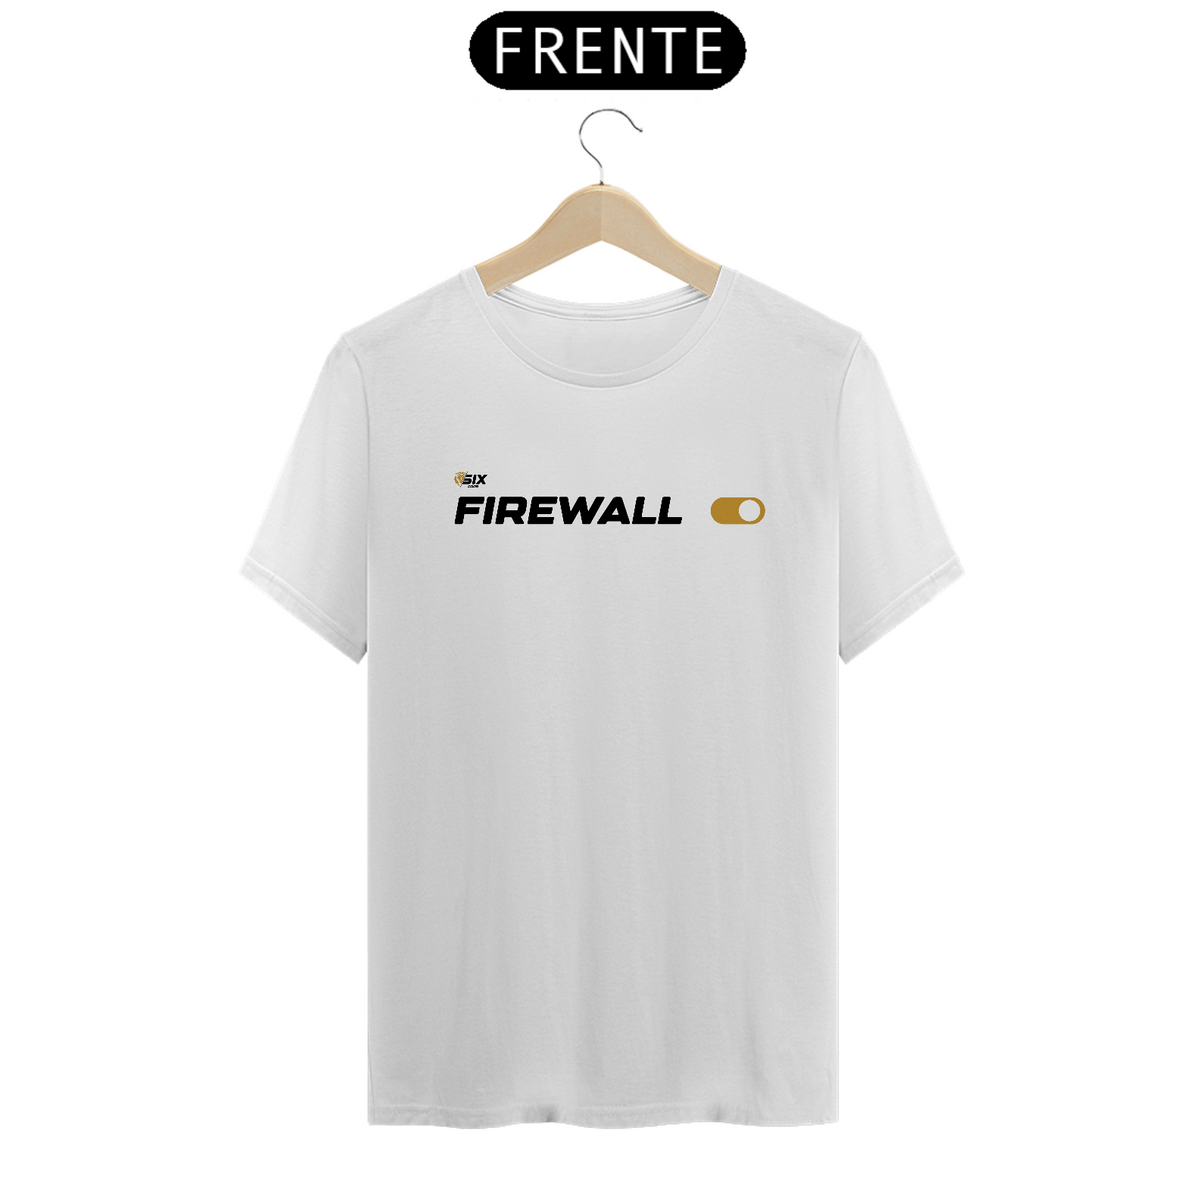 Nome do produto: Camisa SixCore Branca - Firewall